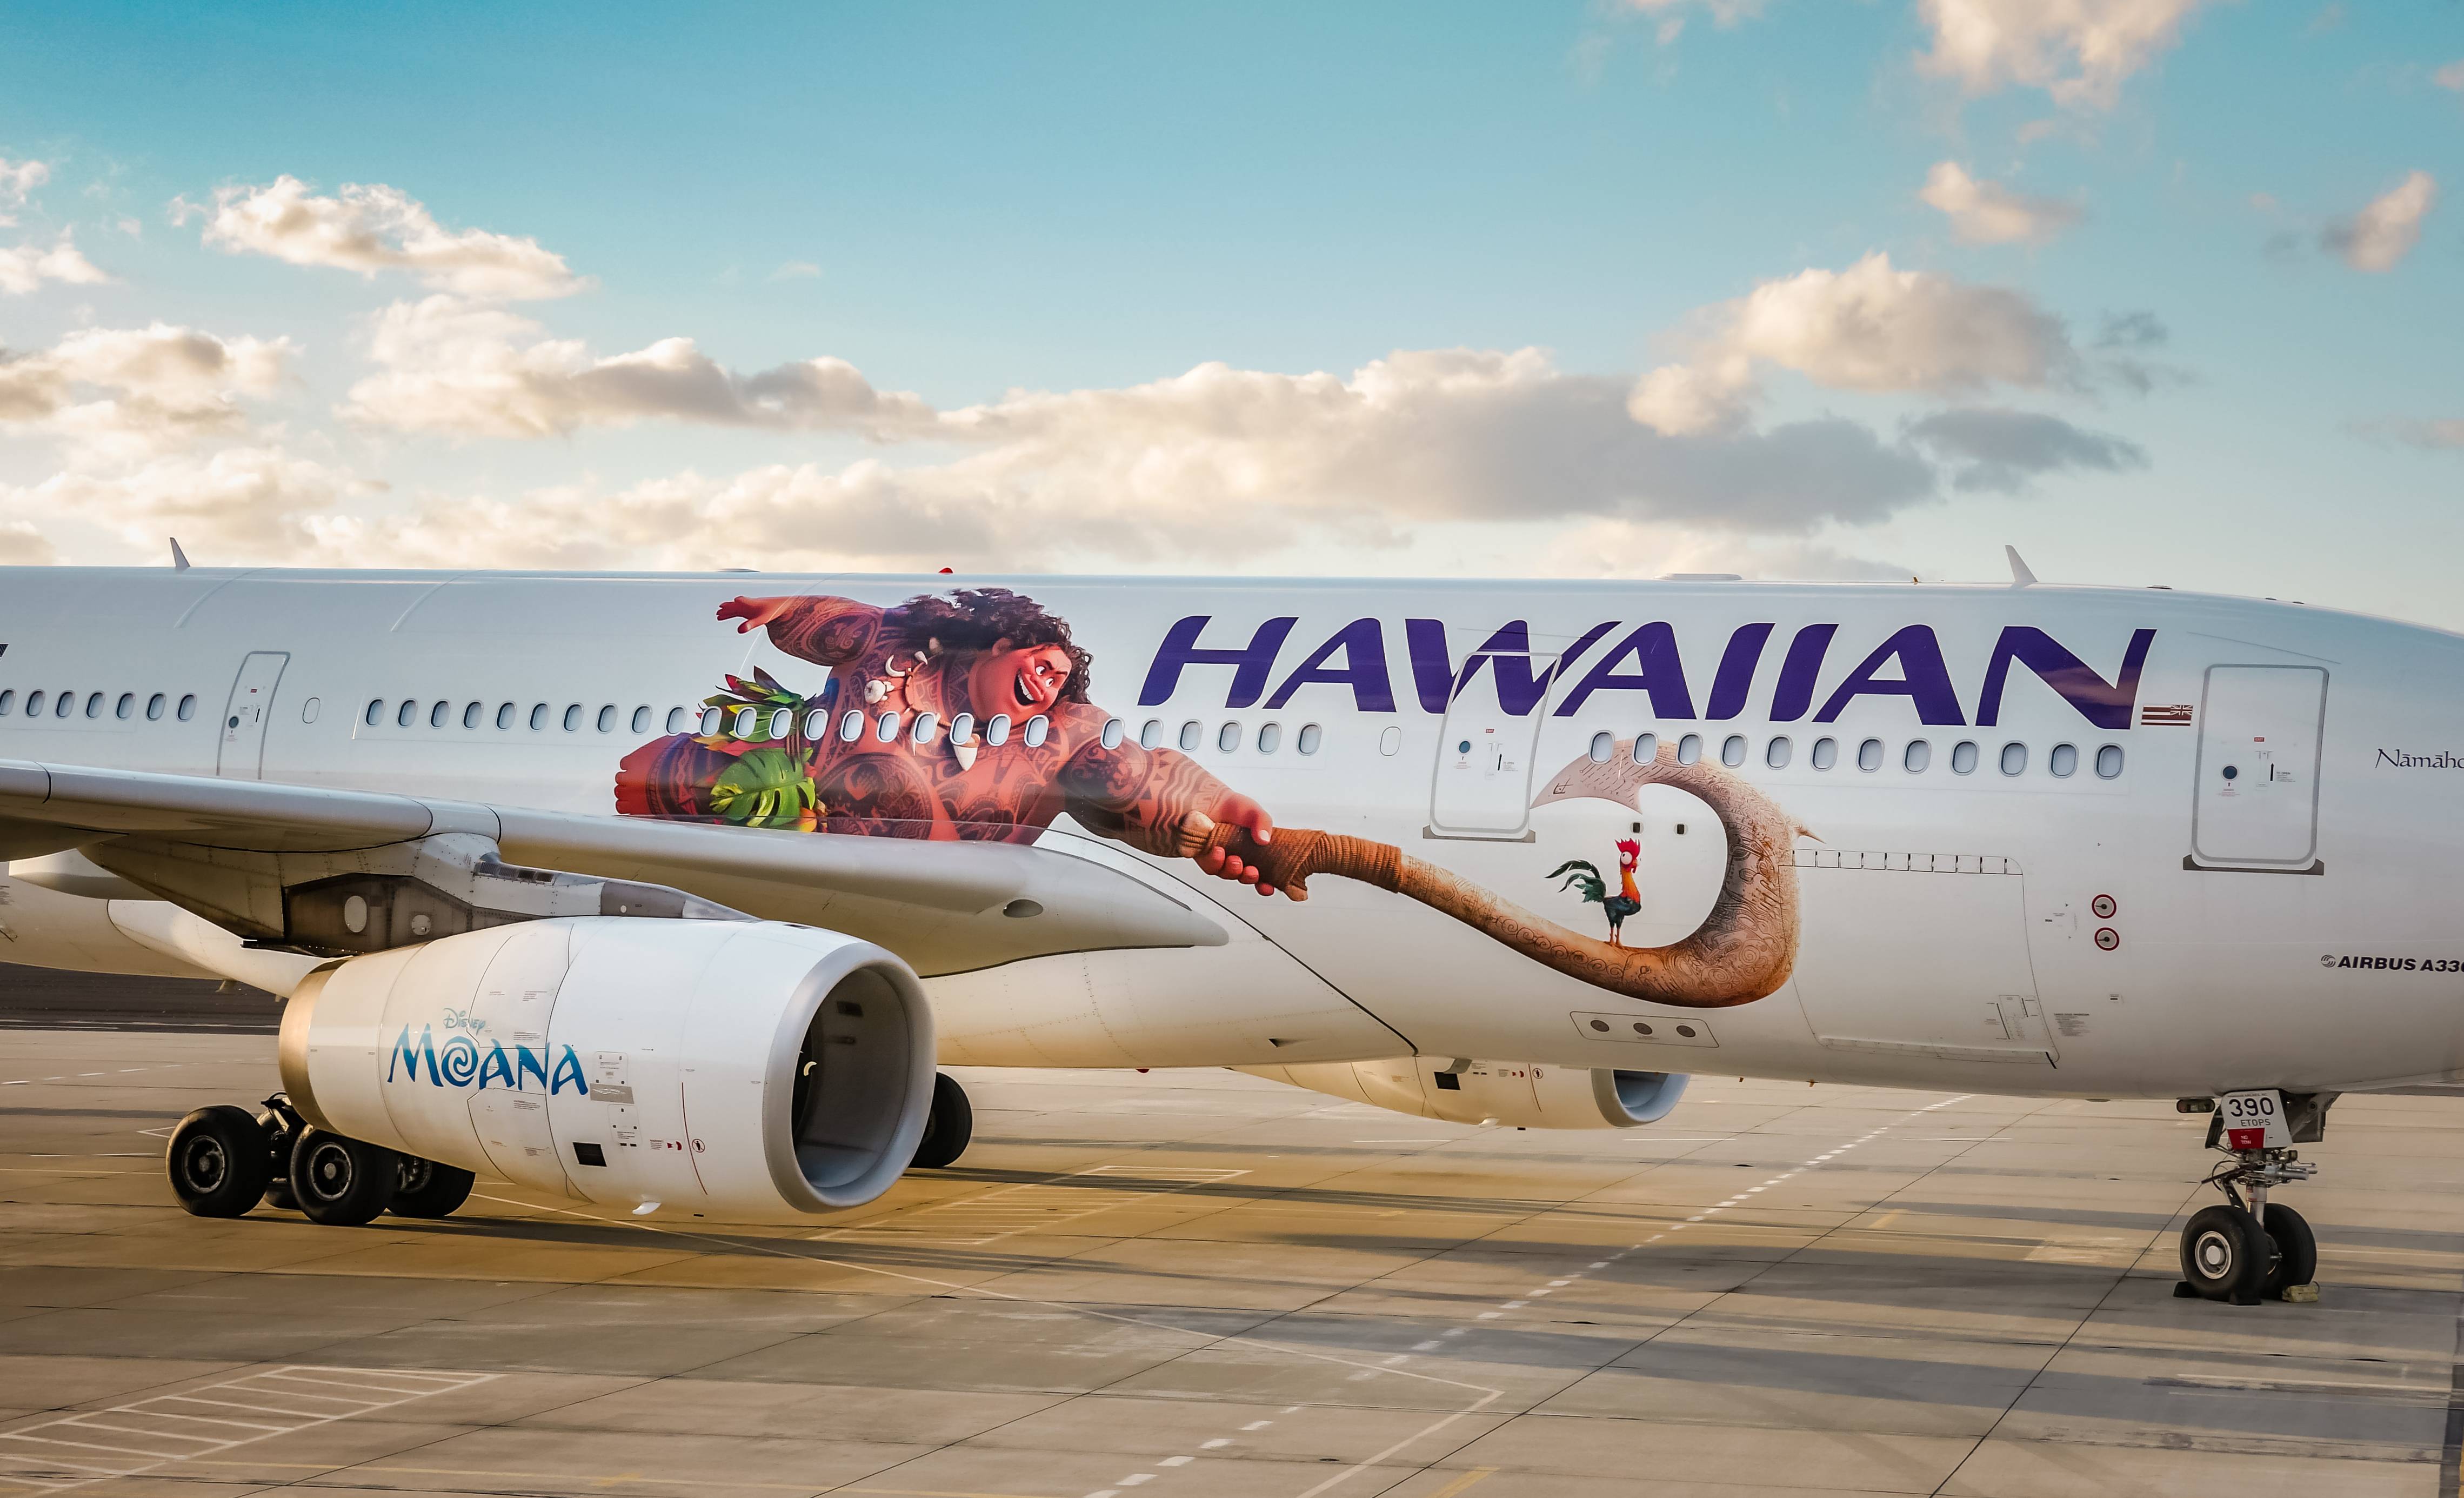 Гавайские авиалинии авиакомпания - официальный сайт hawaiian airlines, контакты, авиабилеты и расписание рейсов  2022